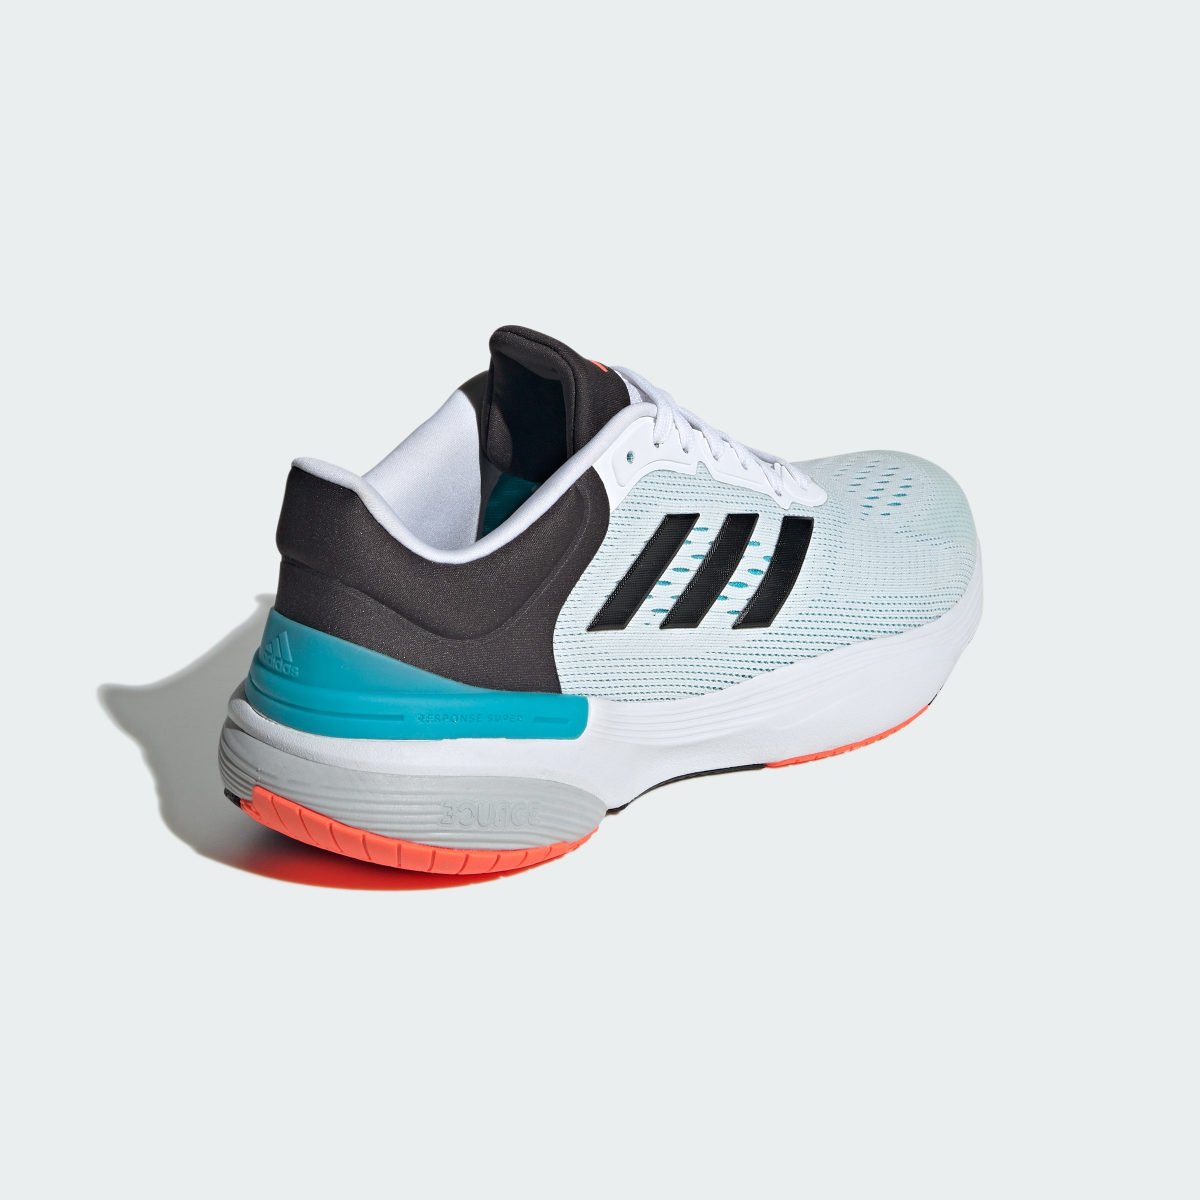 Adidas Response Super 2.0 Ayakkabı. 6